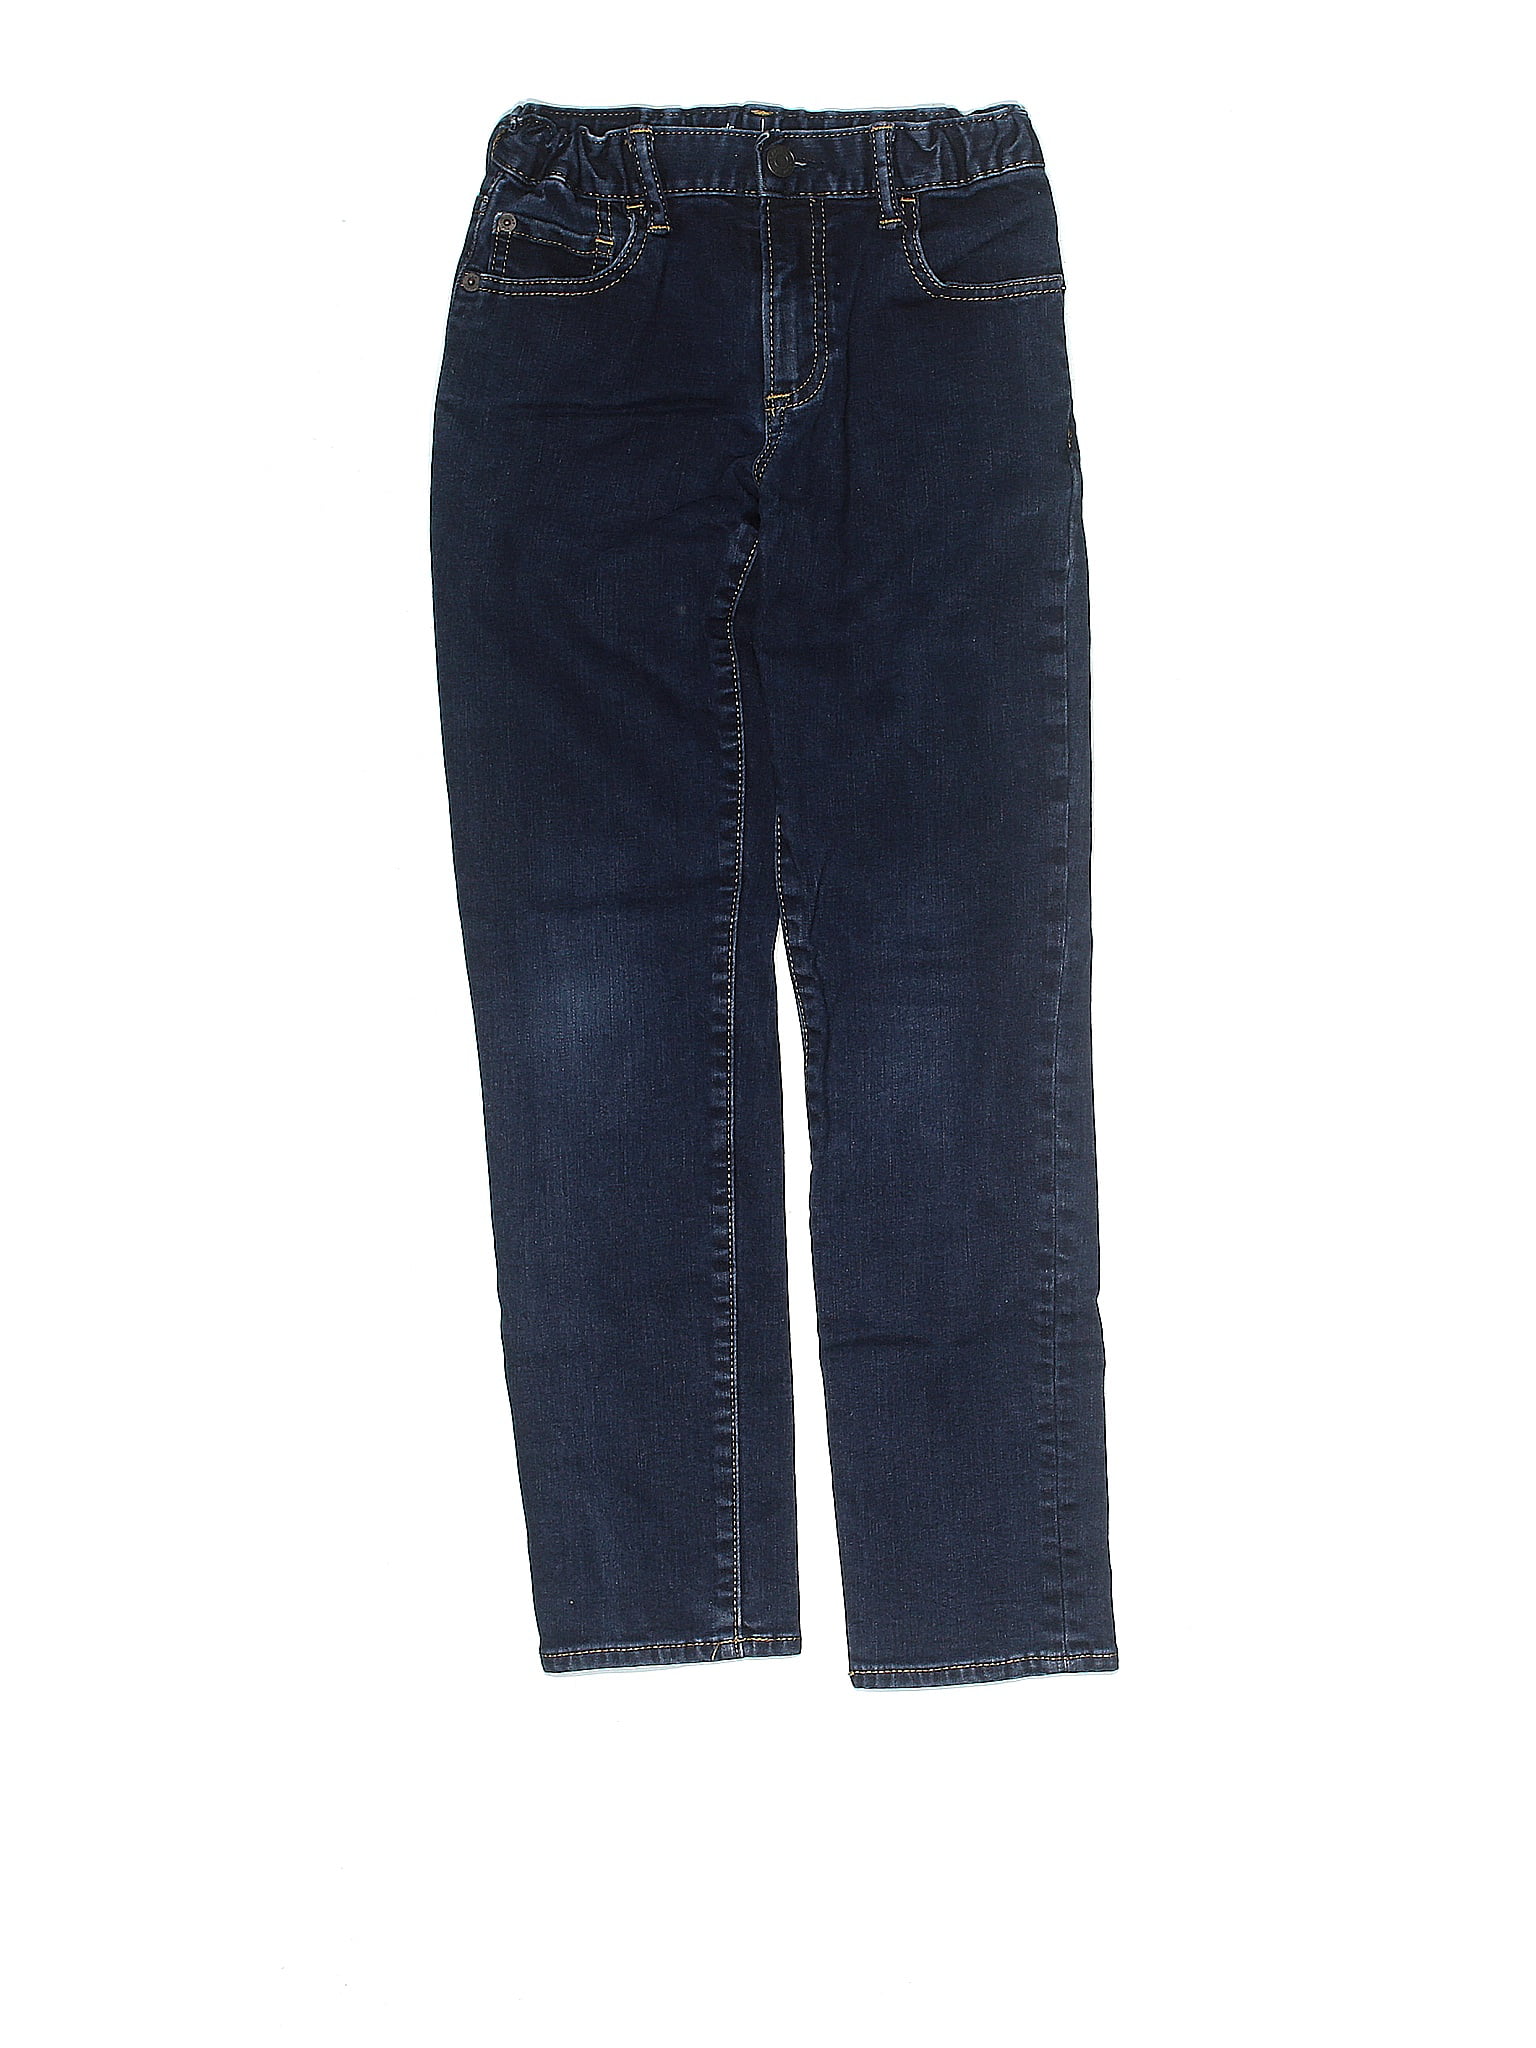 Details about   boys gap kids Original fit blue denim jeans 12 slim 12S 